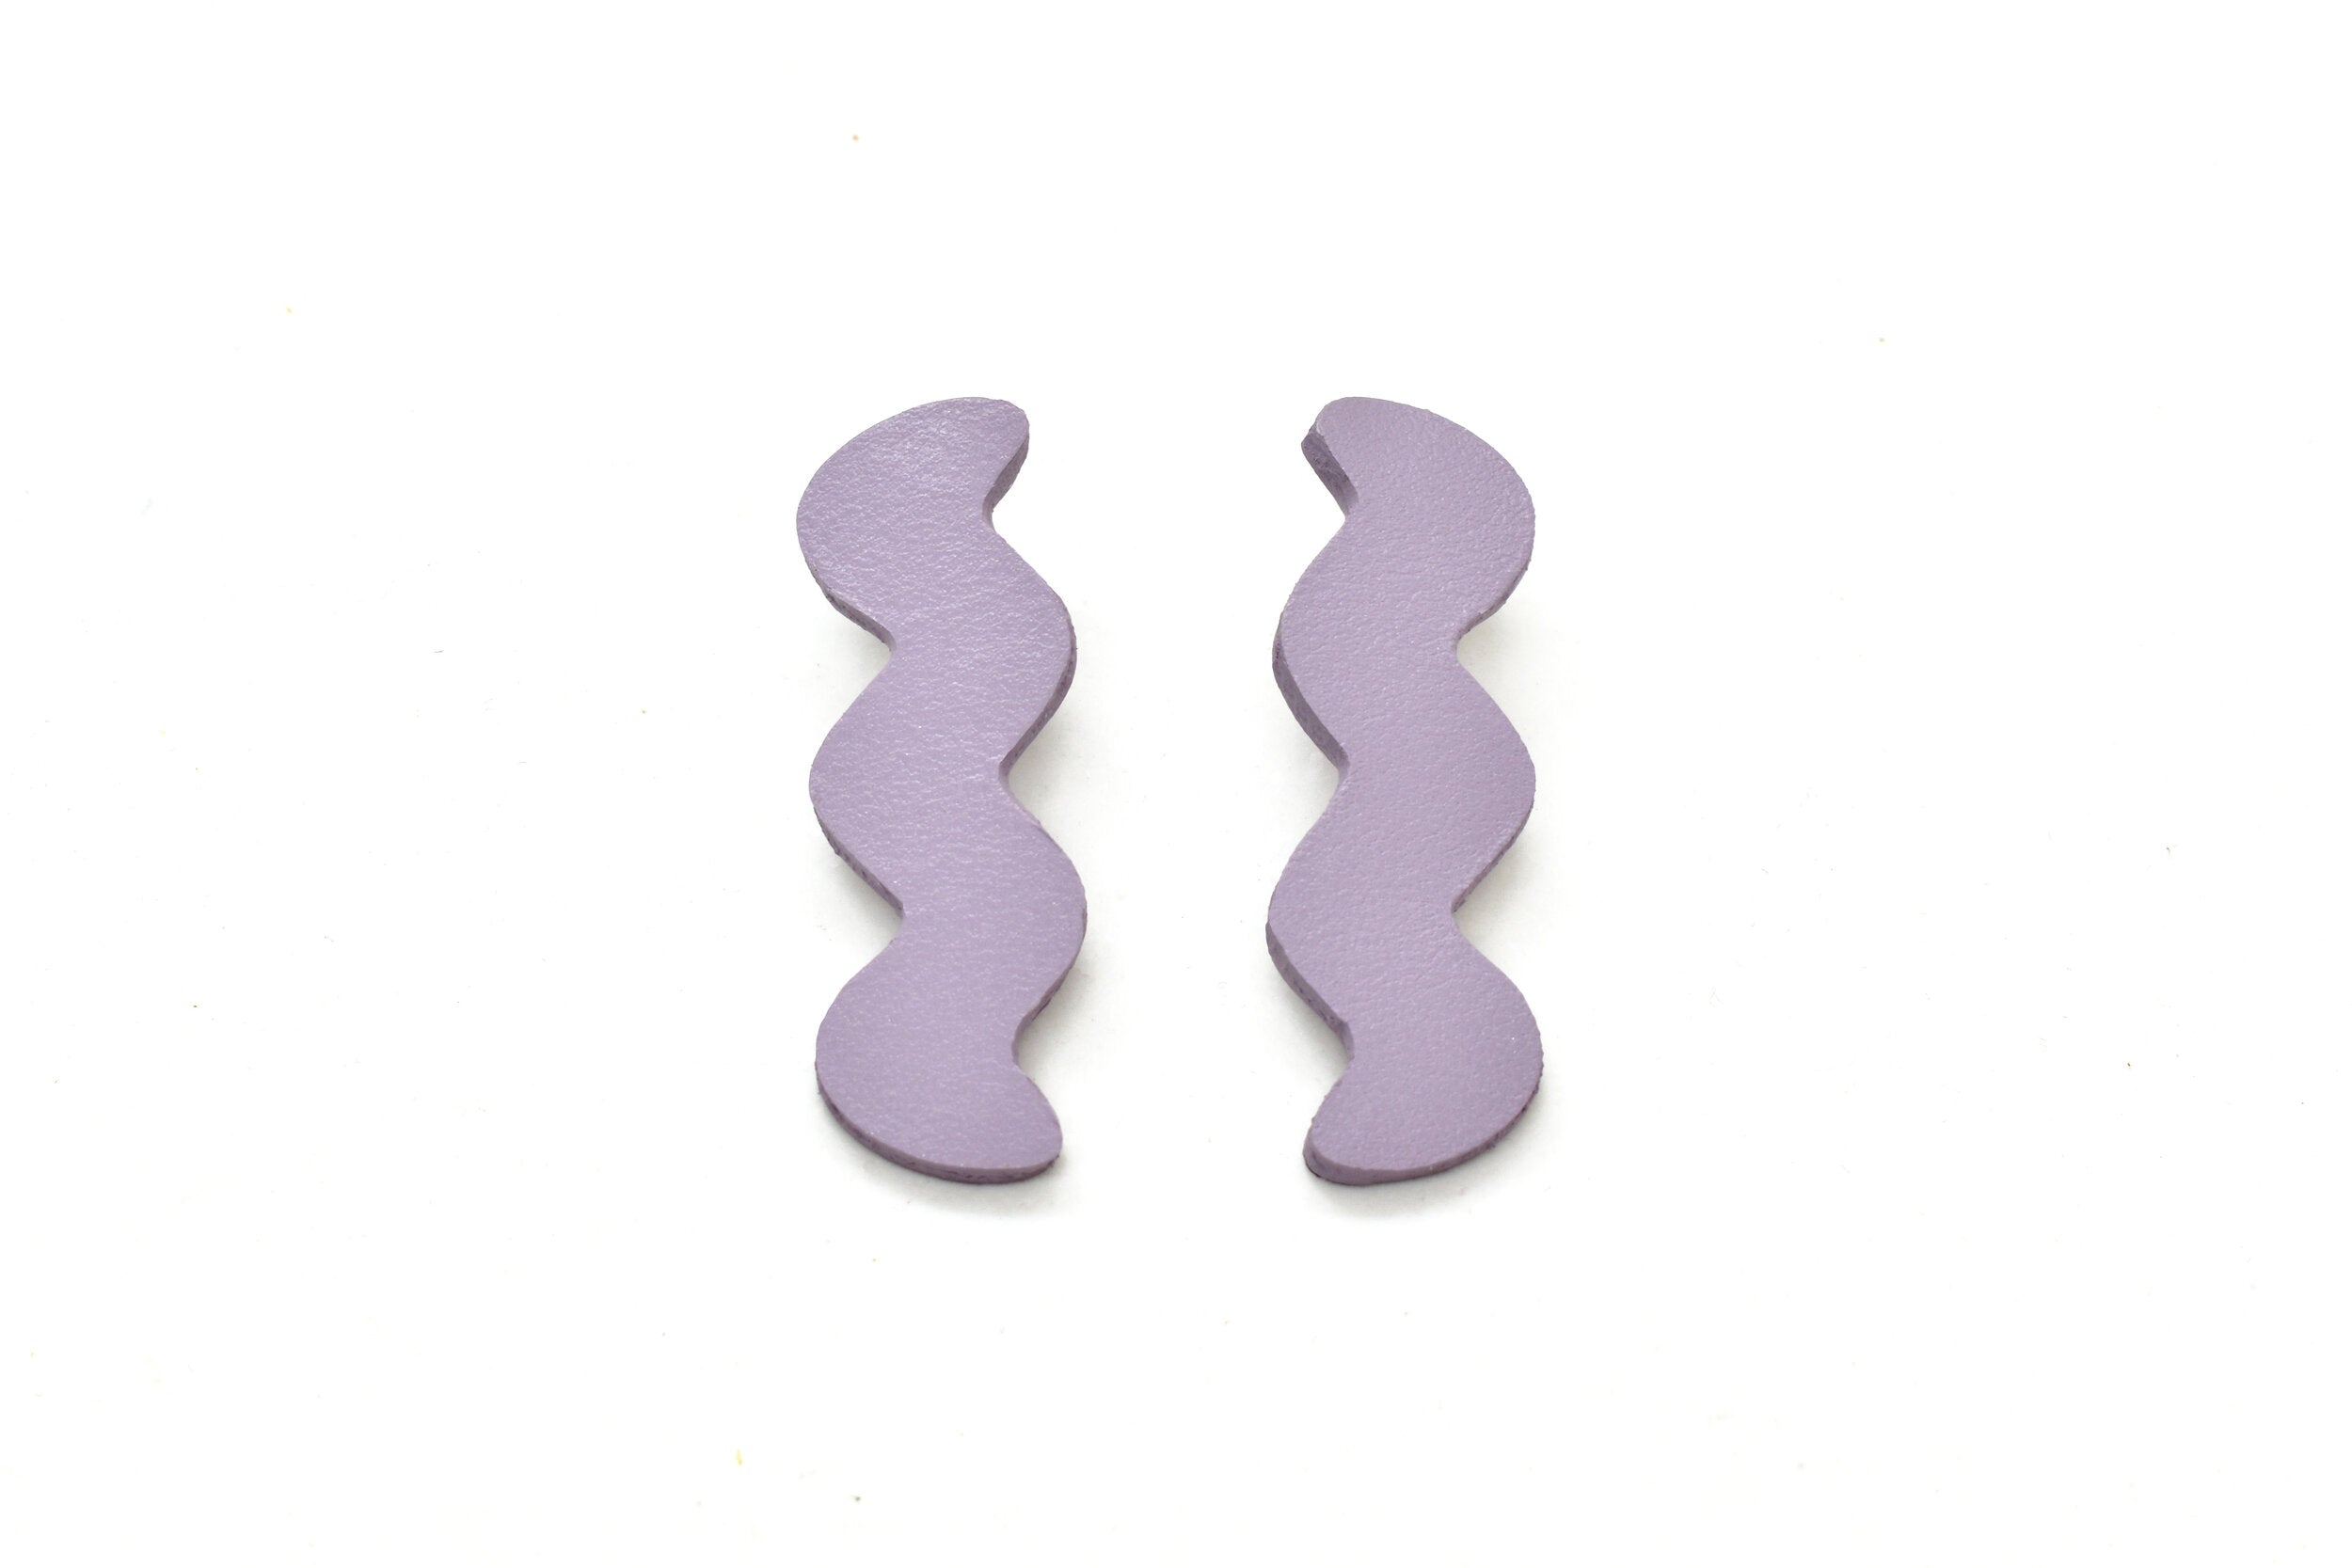 lavender leather earrings zig zag earrings modern funky colorful earrings lightweight stud earrings